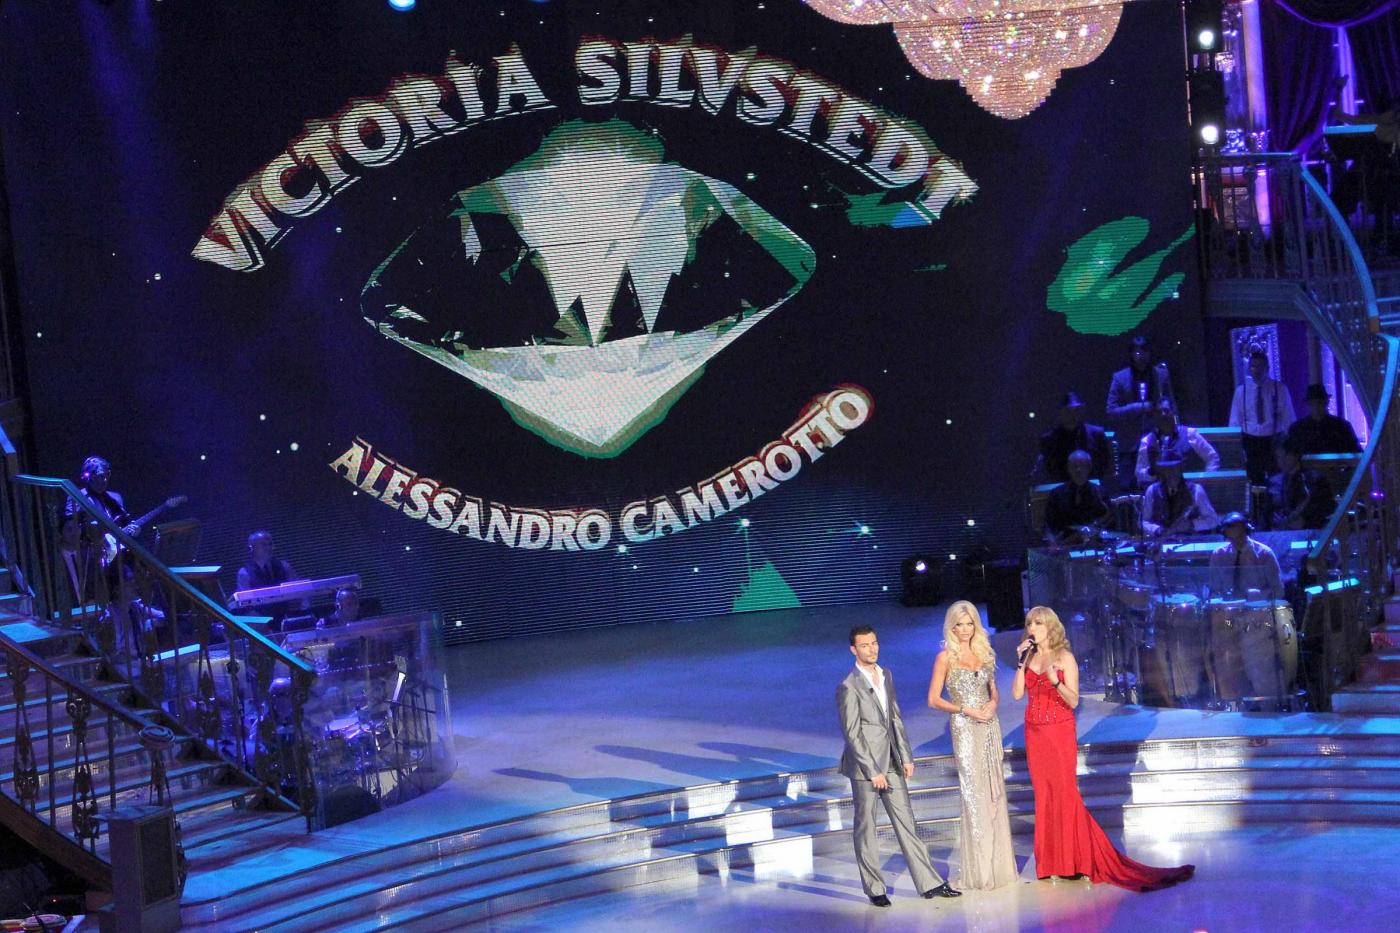 Victoria Silvstedt sexy a Ballando con le stelle08